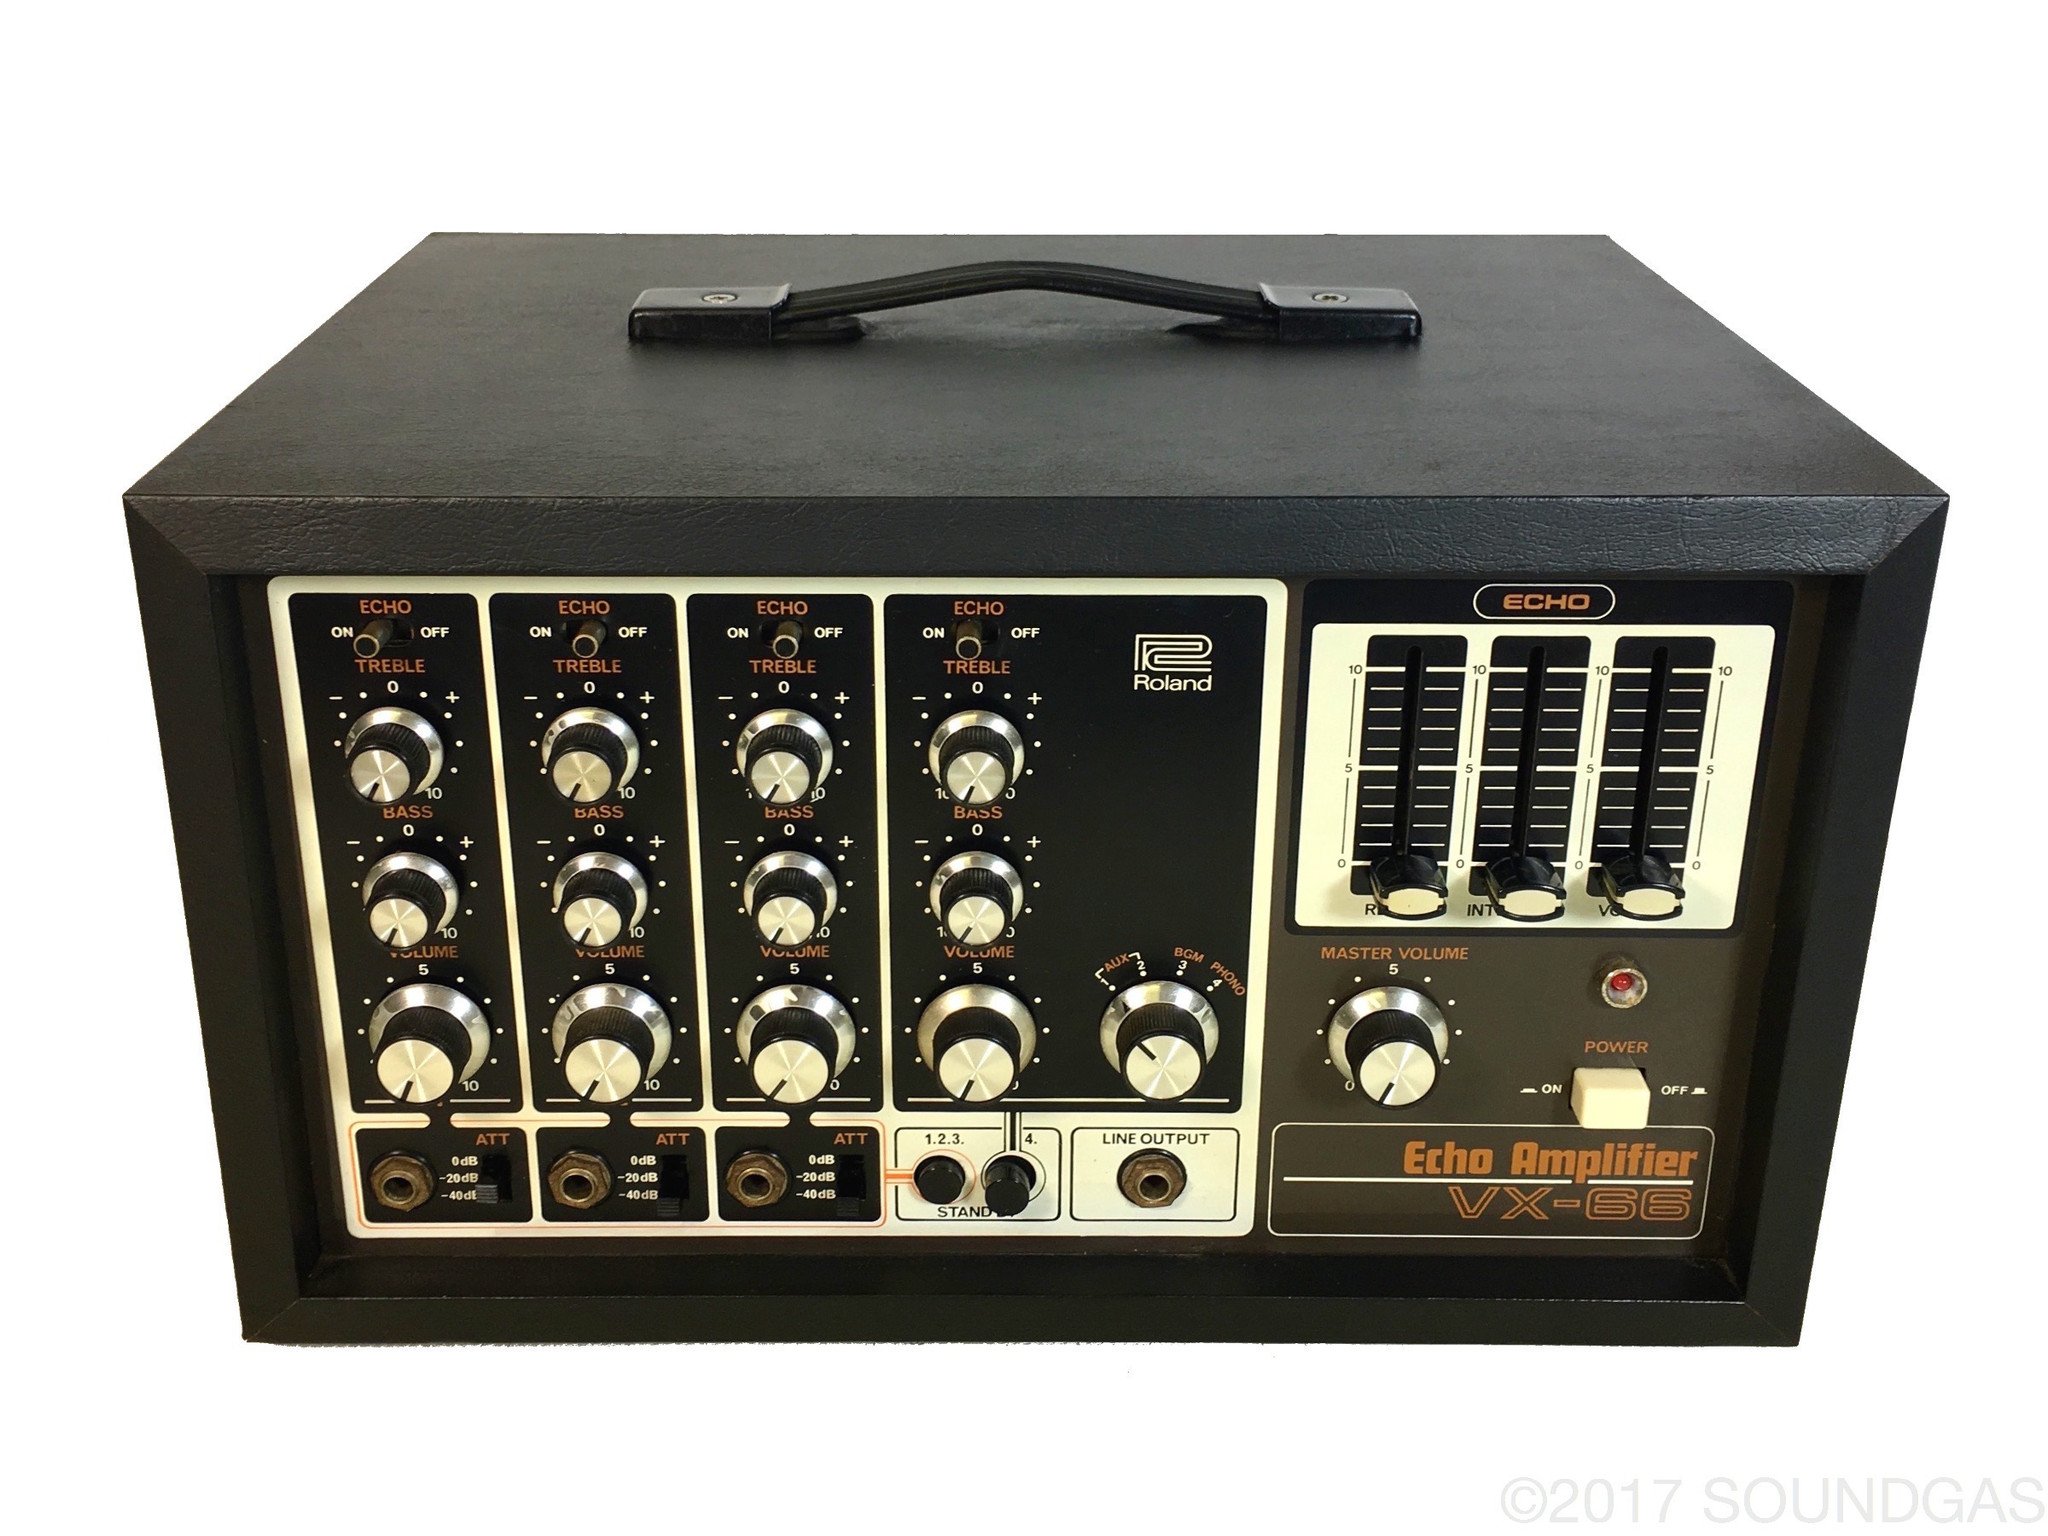 Roland VX-66 Mixer with BBD Echo